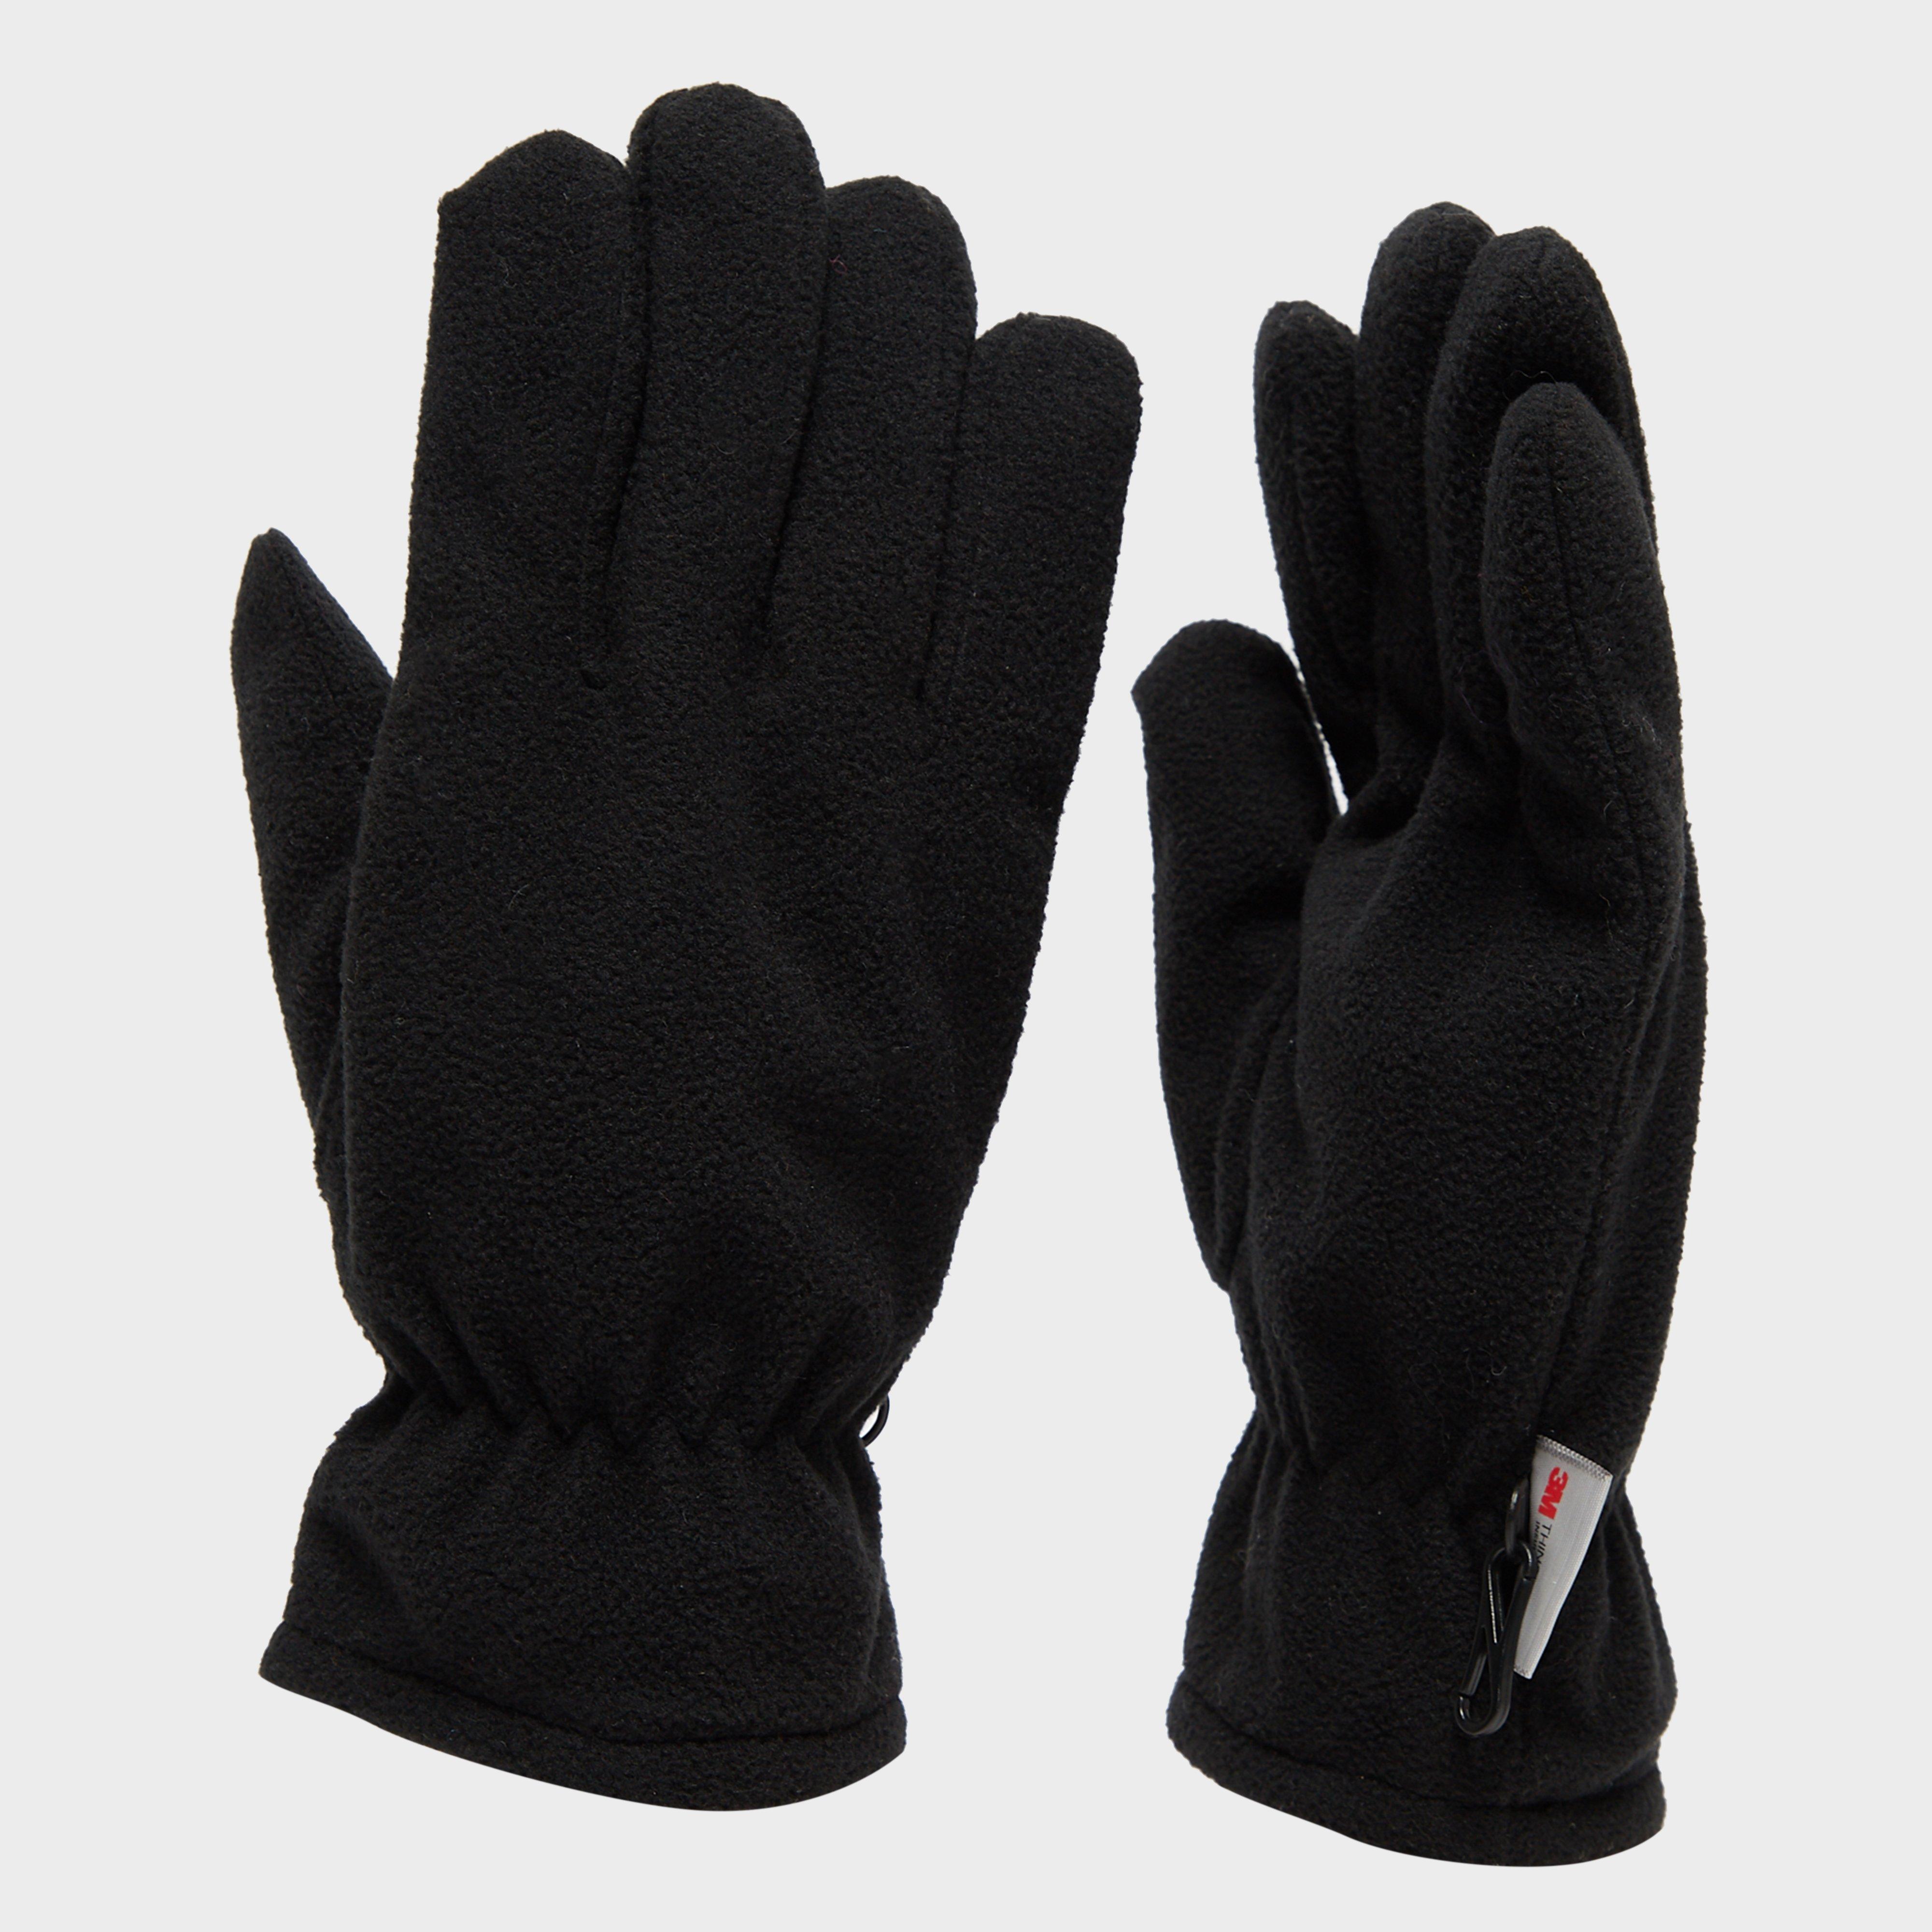 Peter Storm Mens Waterproof Thinsulate Gloves - Black/blk  Black/blk